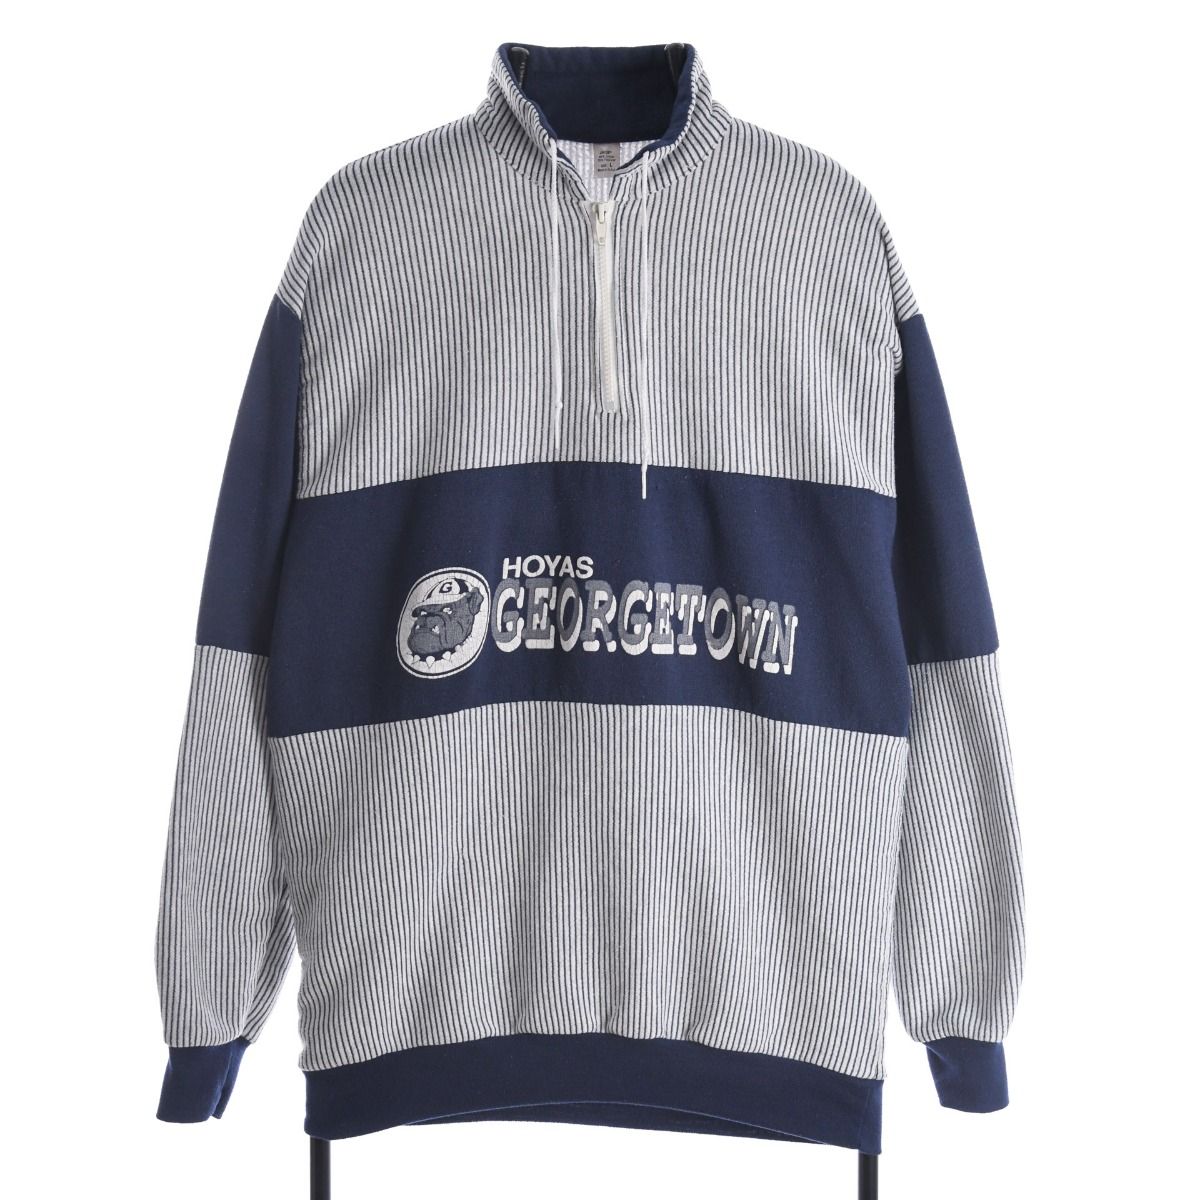 Georgetown Hoyas 1980s Sweatshirt